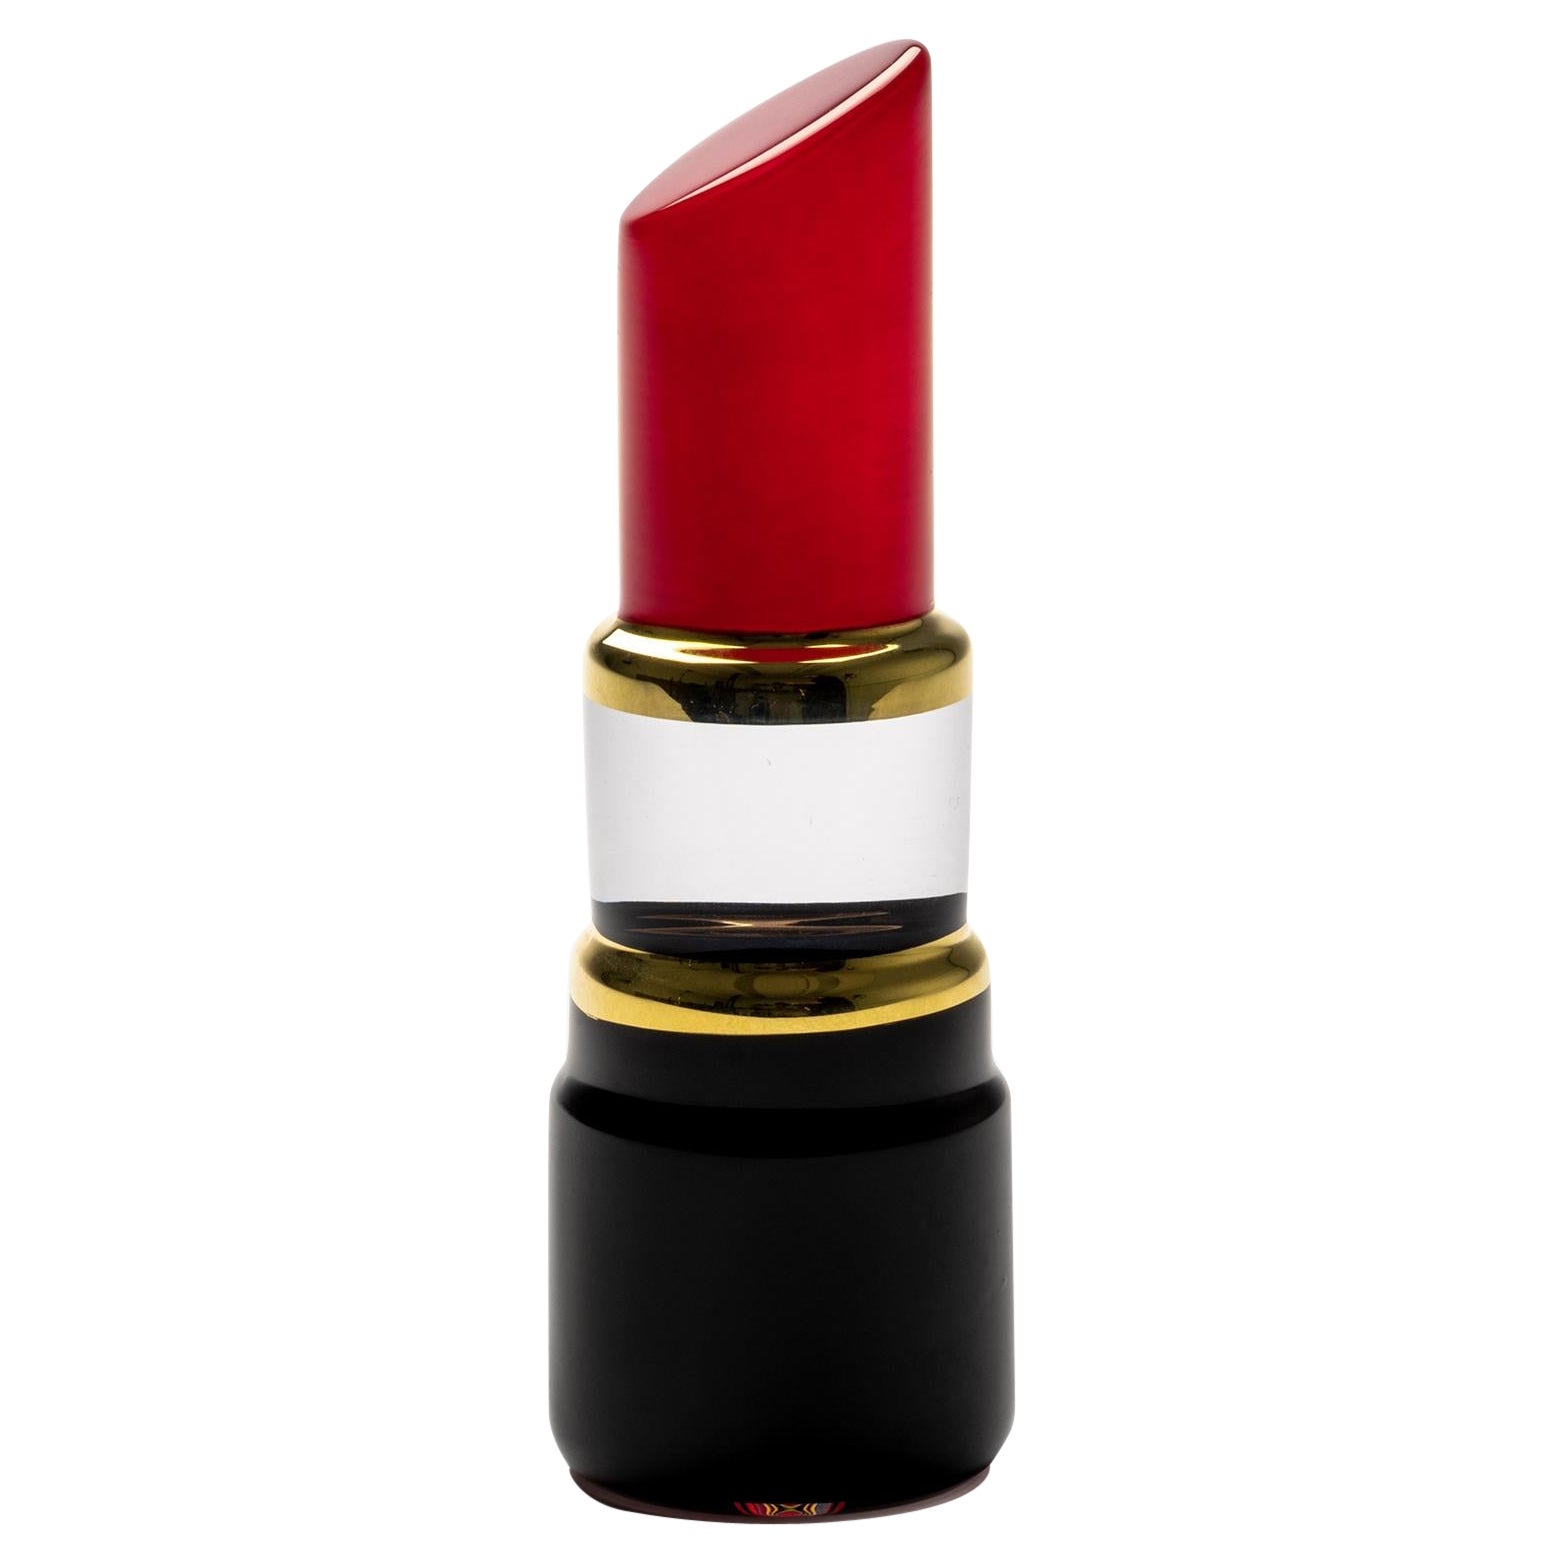 Kosta Boda Make Up Lipstick Poppy Red 